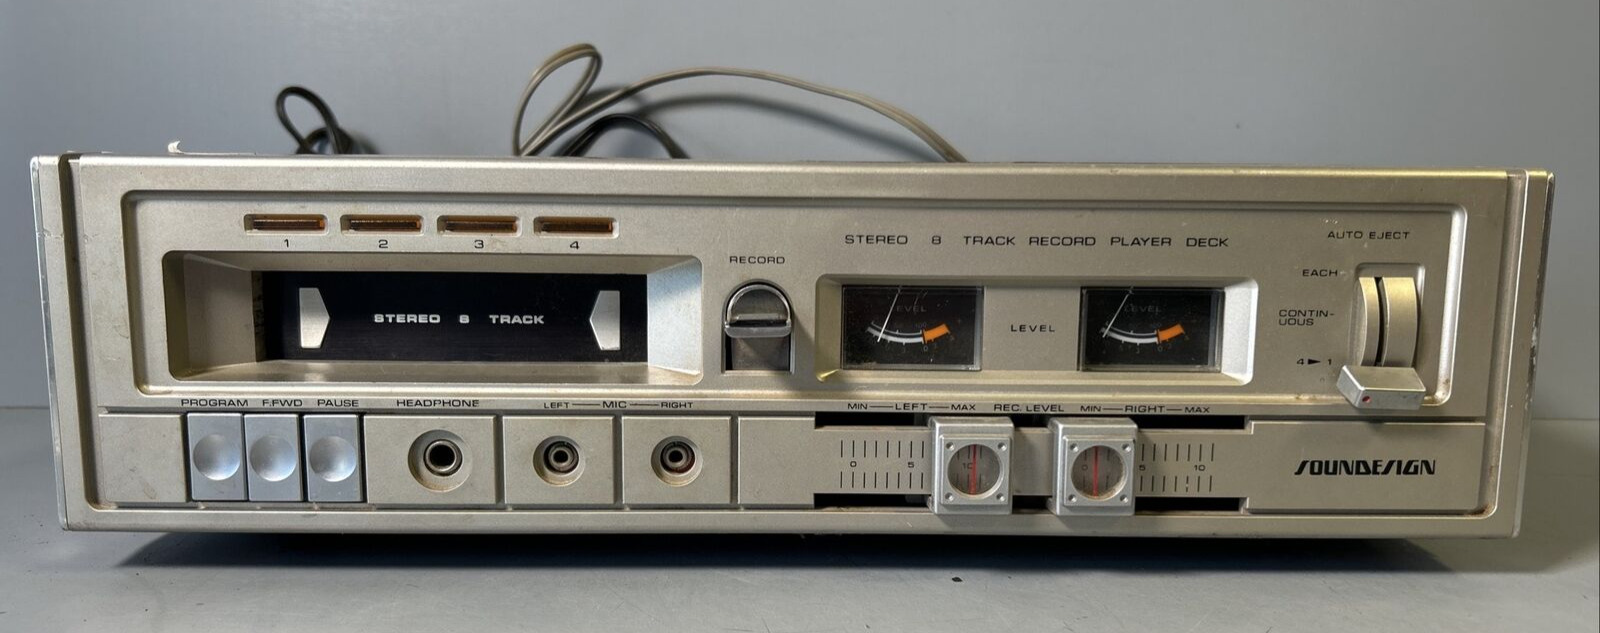 Дека стереофонического проигрывателя Vintage Soundesign на 8 дорожек, модель 493, Япония-70-Х